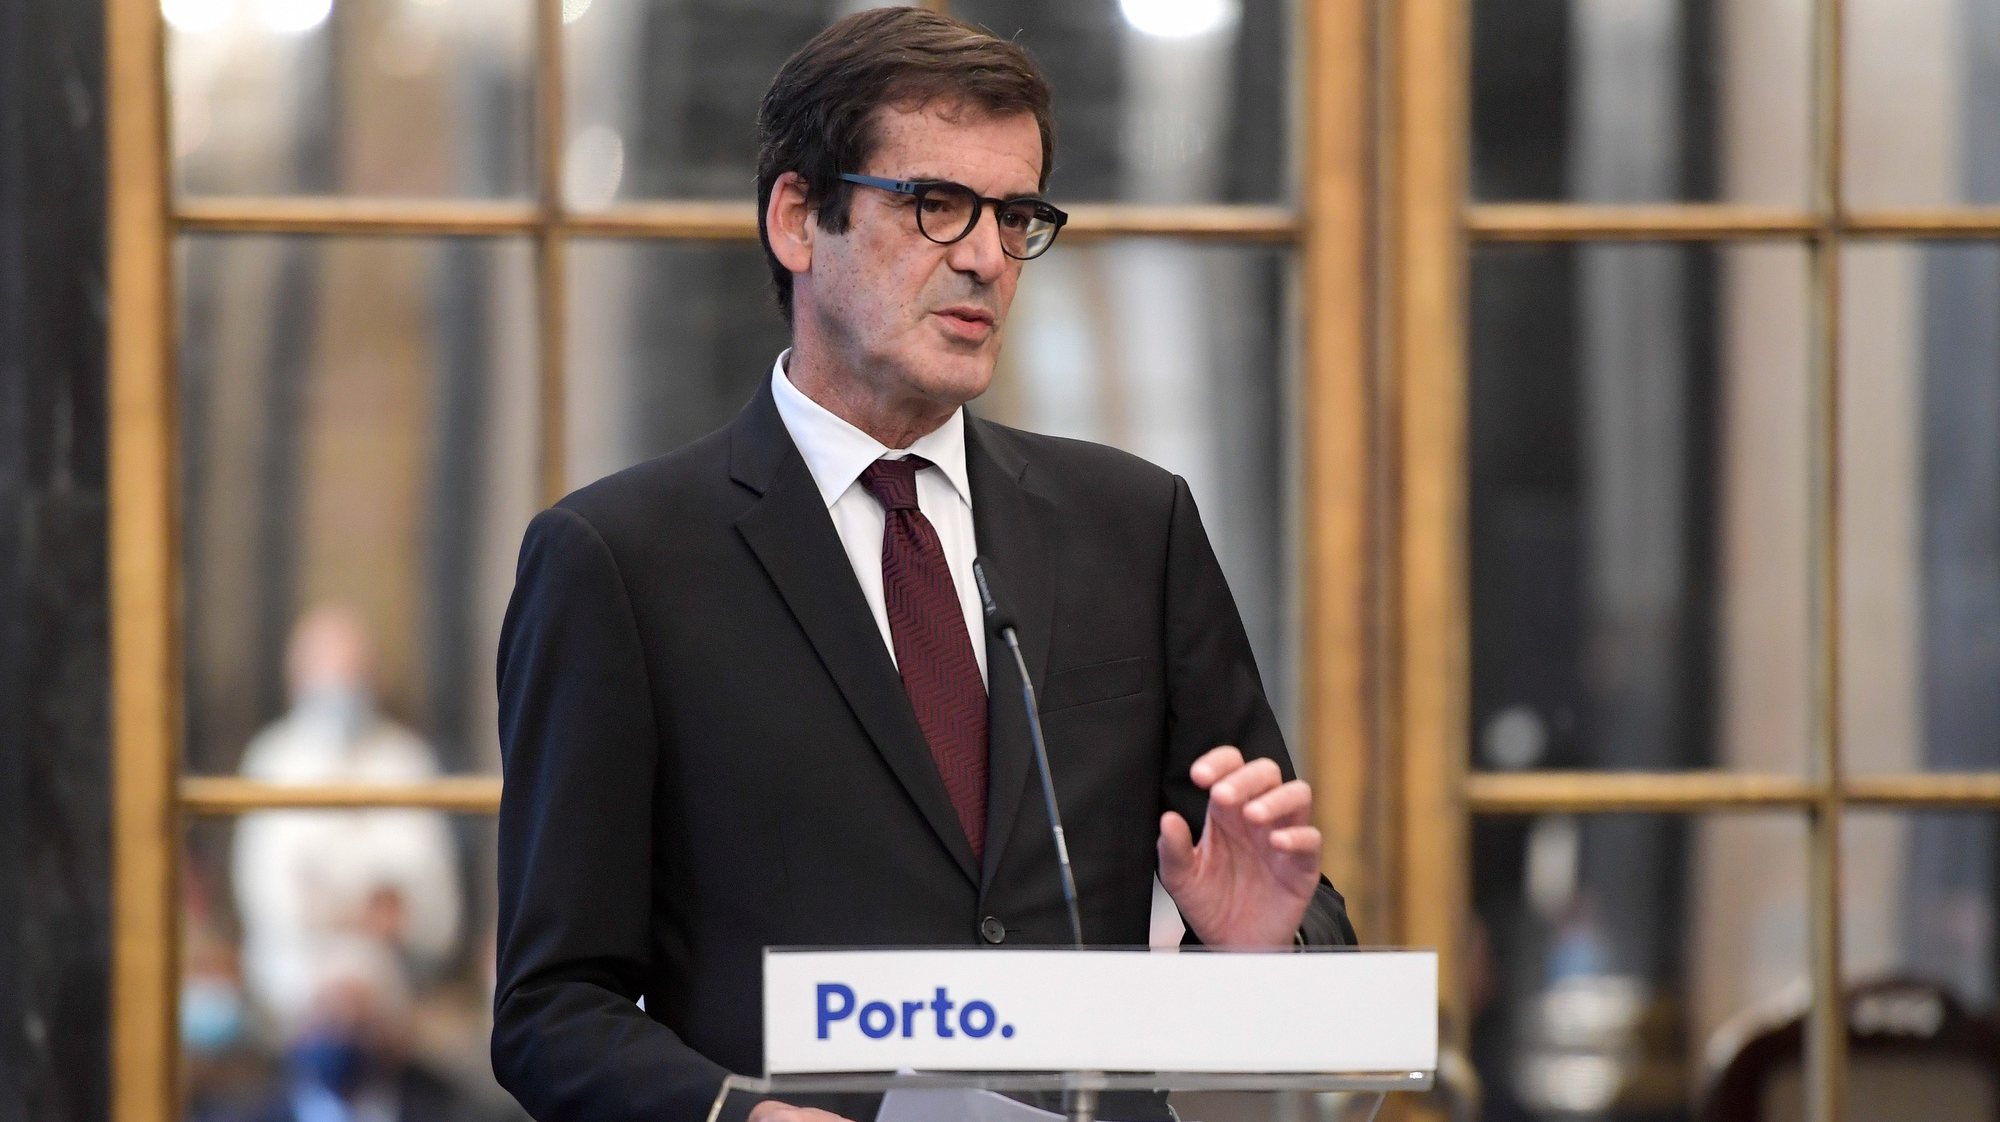 O Presidente da Câmara Municipal do Porto, Rui Moreira, discursa durante a cerimónia de homologação do Acordo de Colaboração no âmbito do Primeiro Direito para o Município do Porto, que decorreu no ediifício da Câmara Municipal, no Porto. 16 de novembro de 2020. FERNANDO VELUDO/LUSA